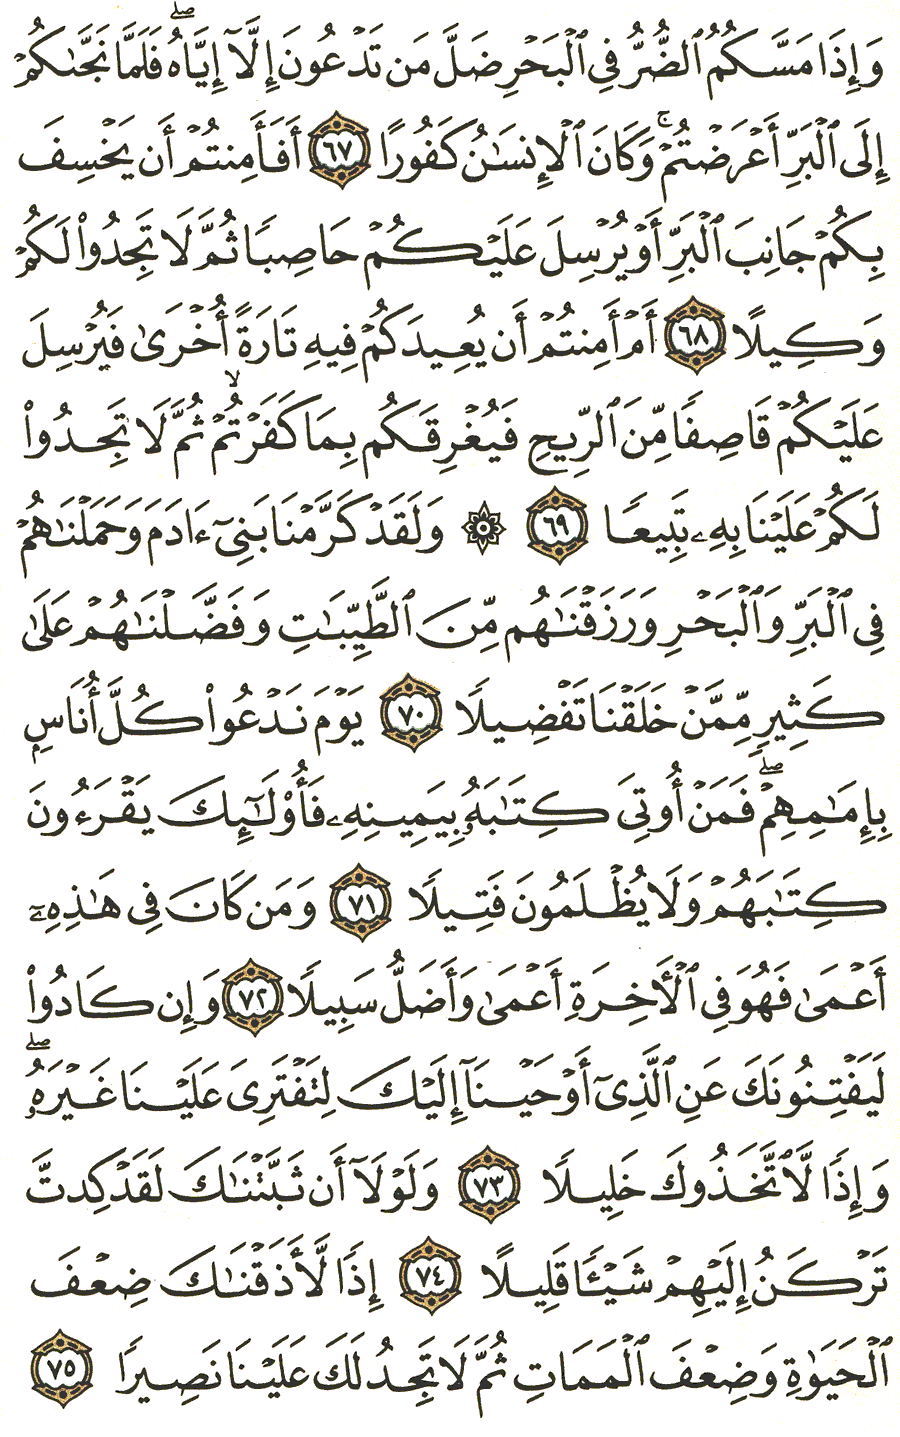 الصفحة رقم 289  من القرآن الكريم مكتوبة من المصحف